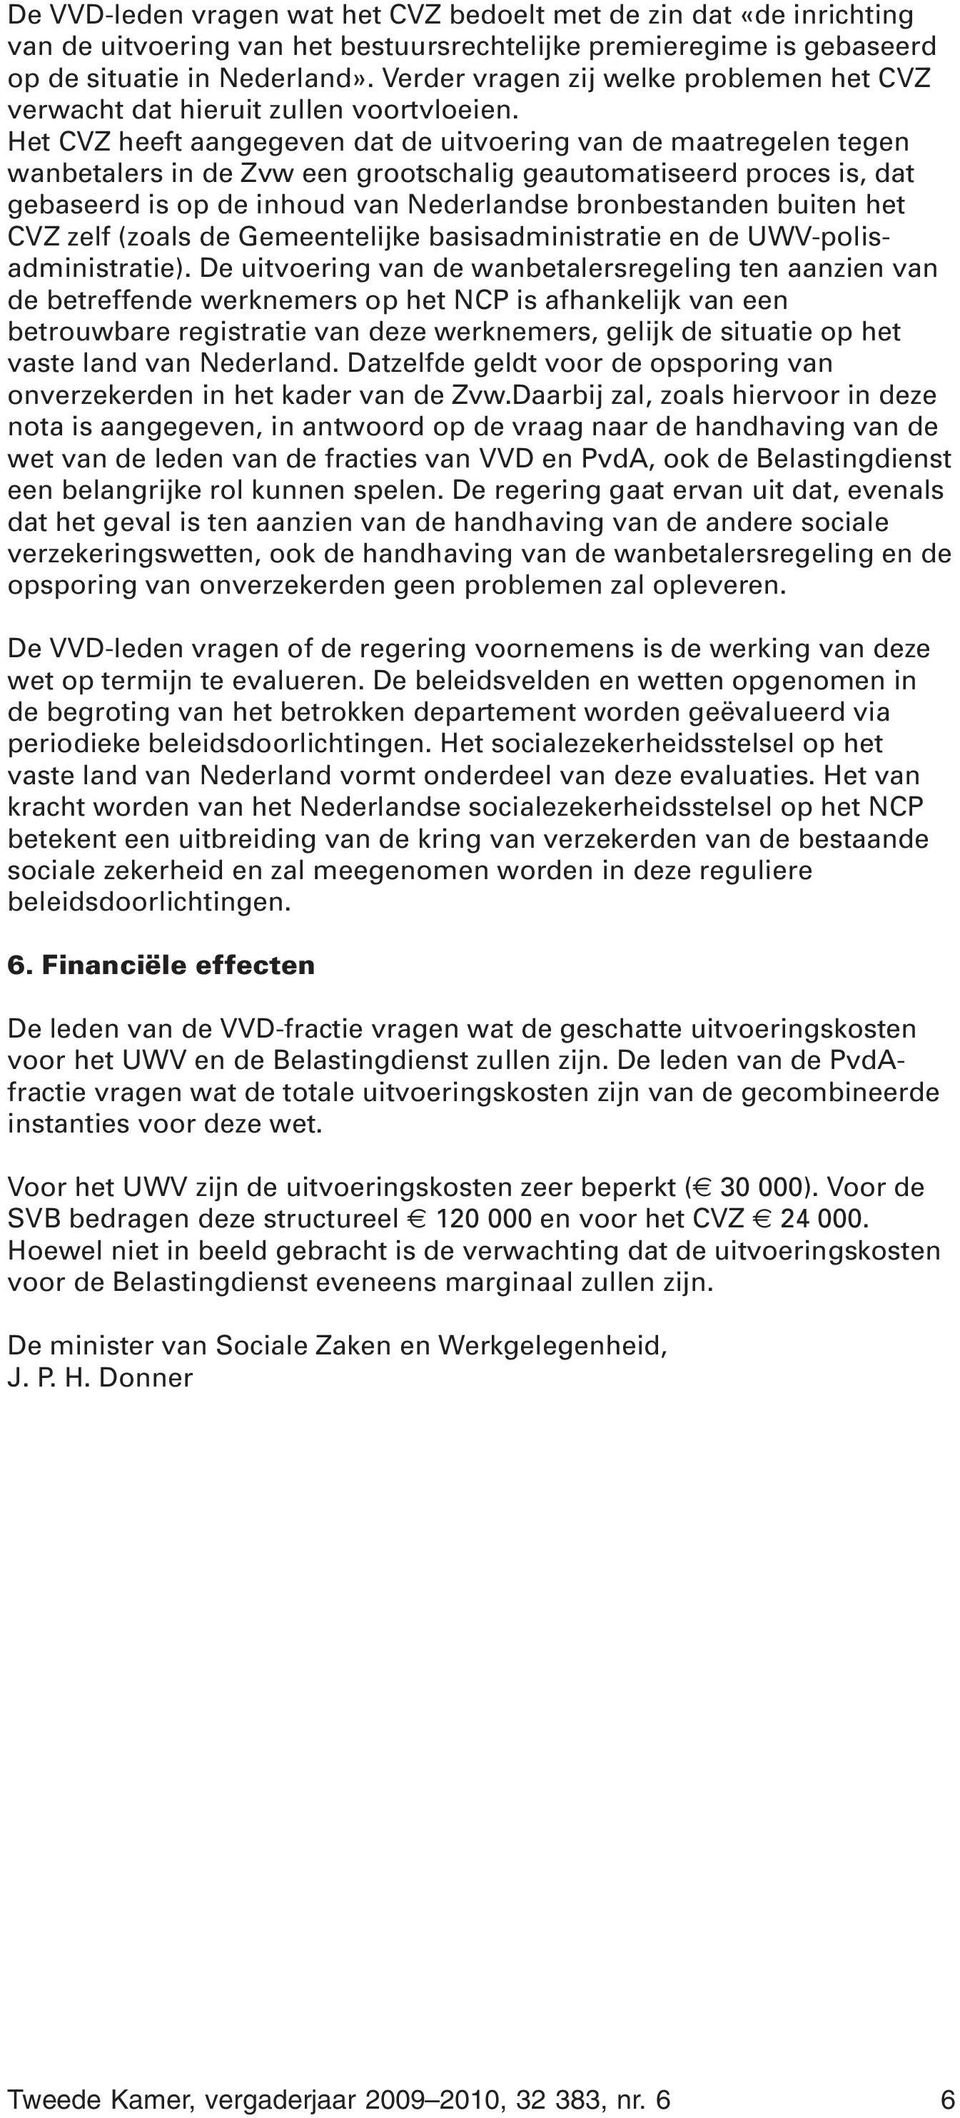 Het CVZ heeft aangegeven dat de uitvoering van de maatregelen tegen wanbetalers in de Zvw een grootschalig geautomatiseerd proces is, dat gebaseerd is op de inhoud van Nederlandse bronbestanden